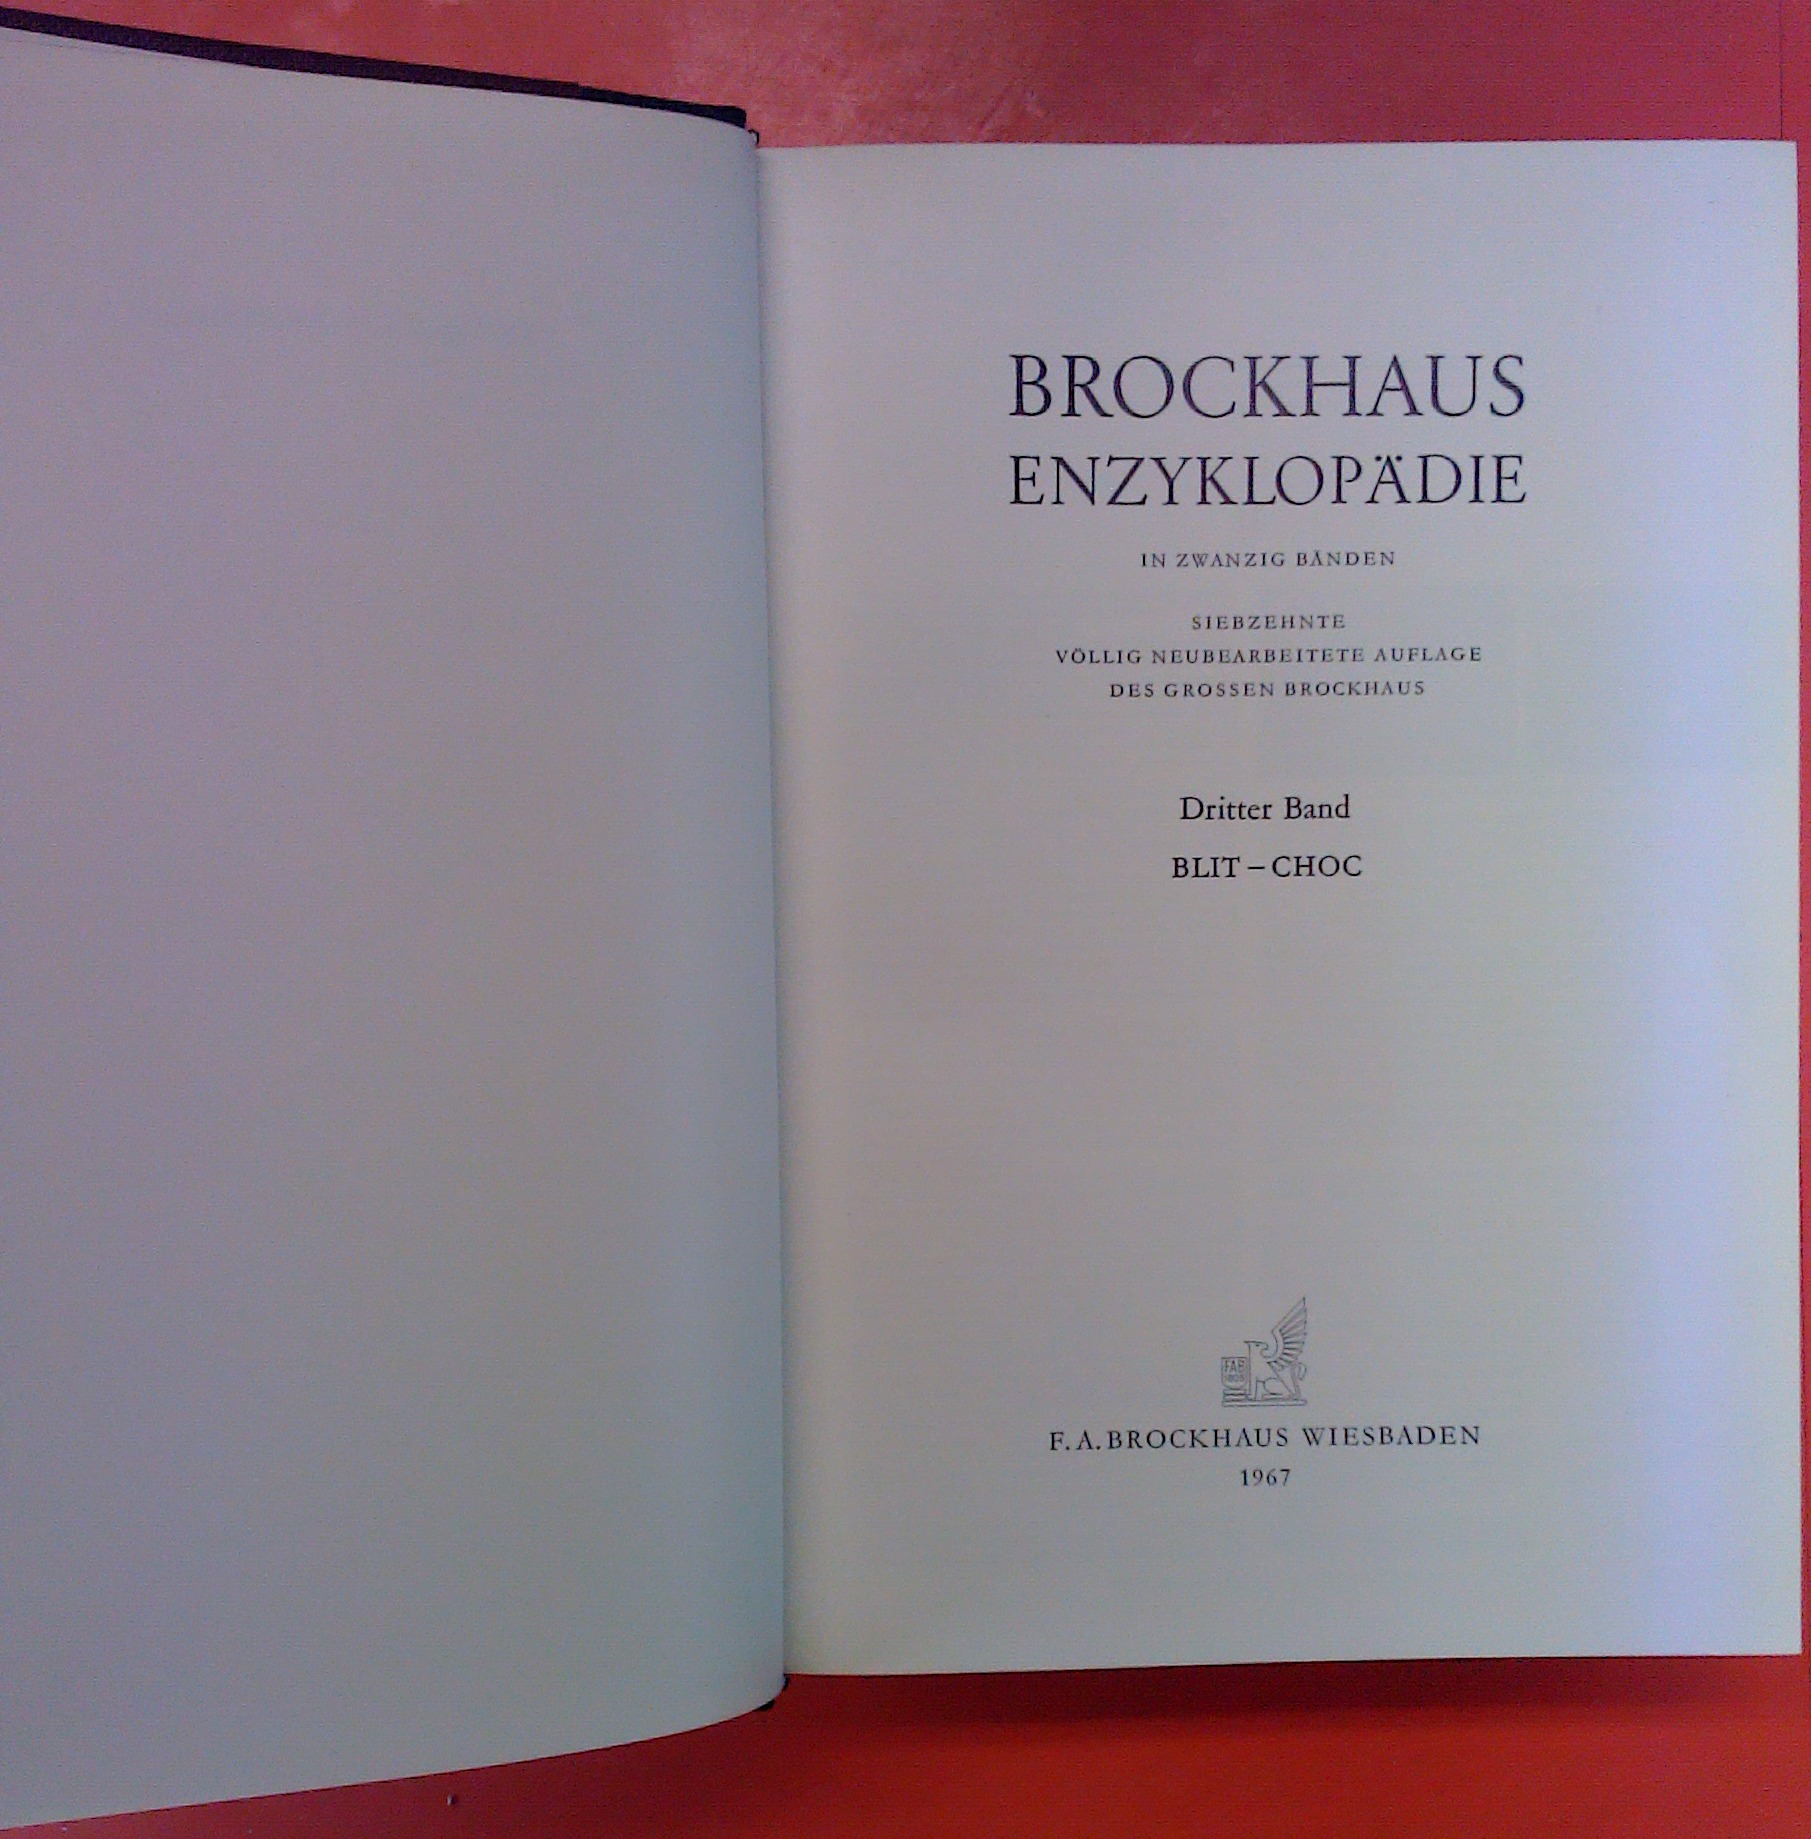 Brockhaus Enzyklopädie in 20 Bänden - Band 3: BLIT - CHOC (17. Auflage) - ohne Autorenangabe